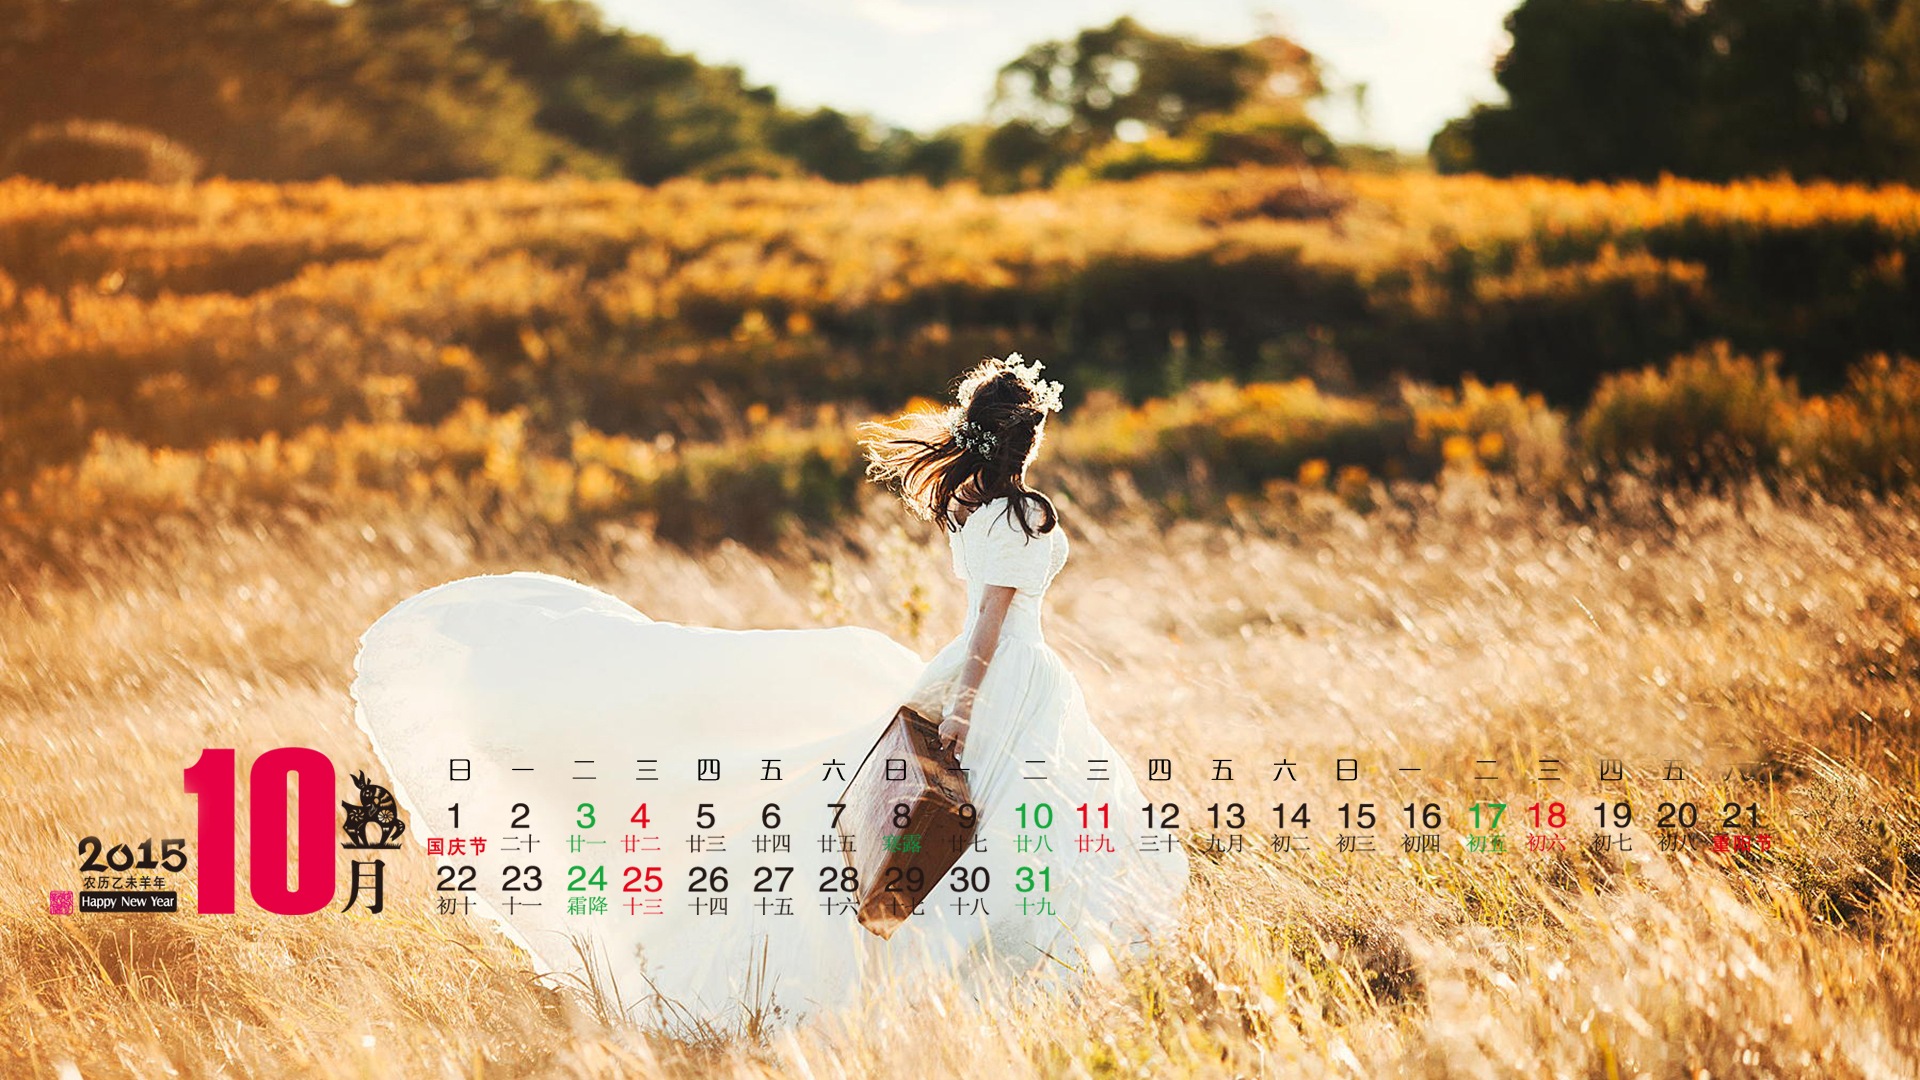 Calendar 2015 HD wallpapers #3 - 1920x1080